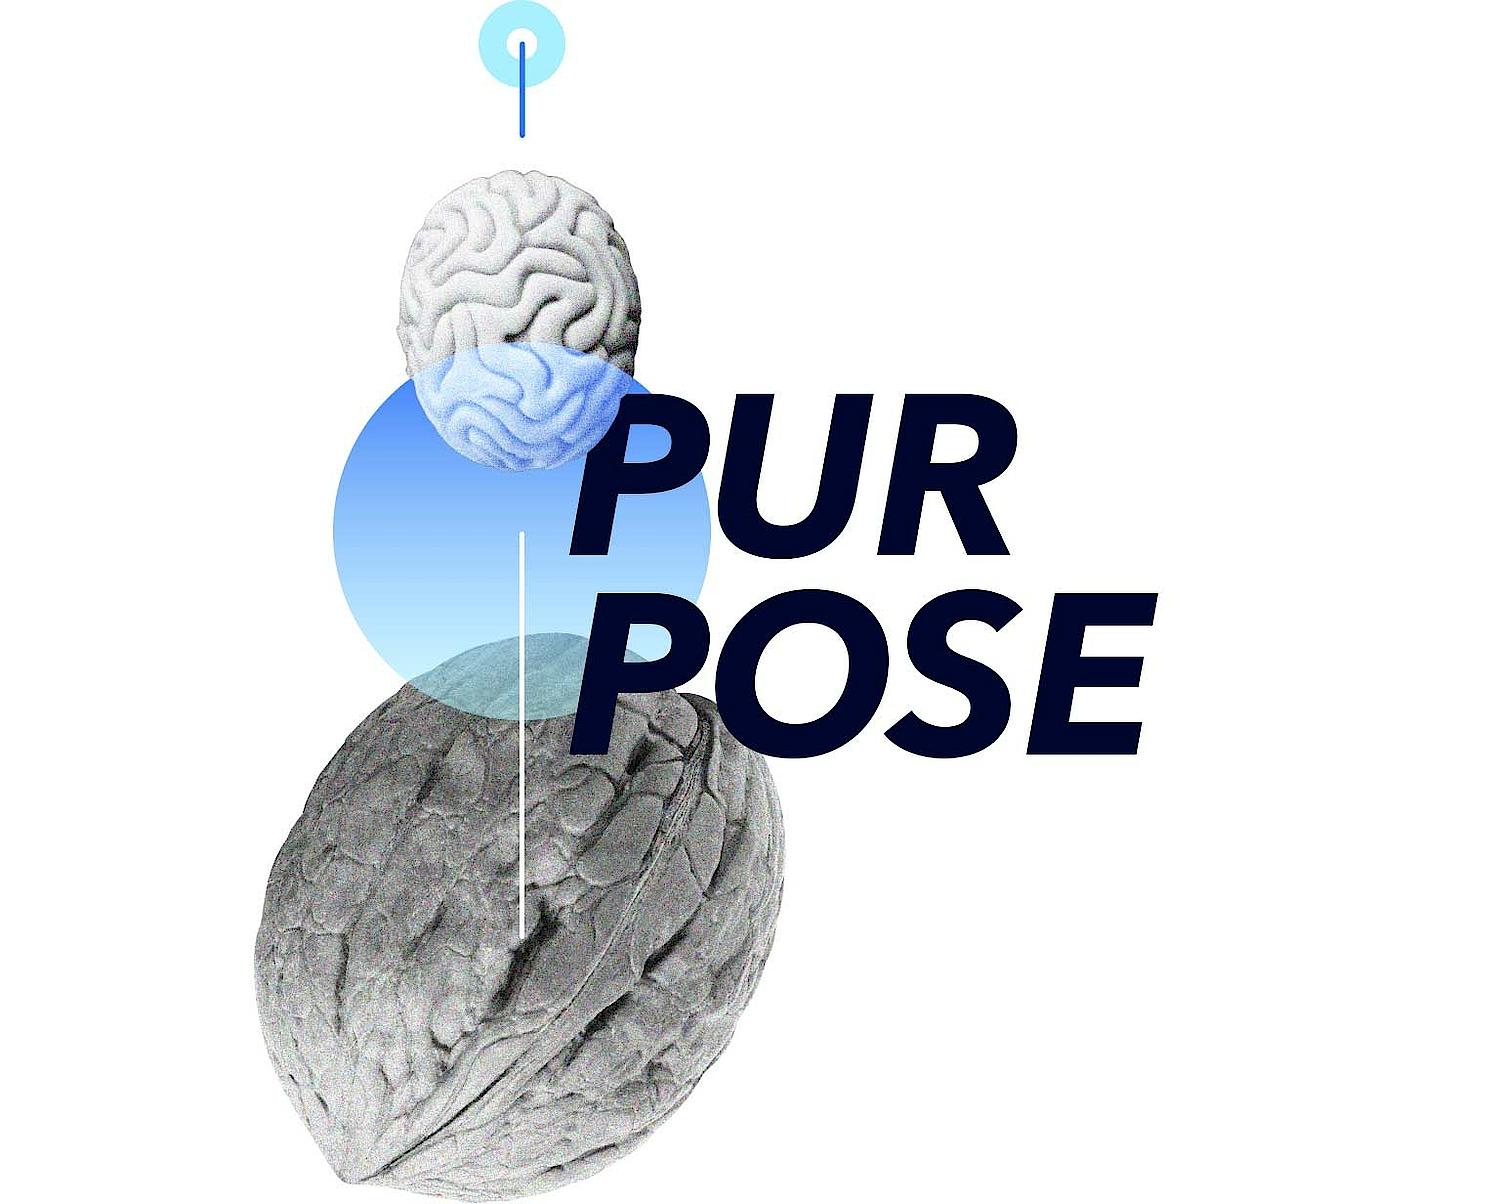 Wort "Purpose" mit Walnuss und Gehirn